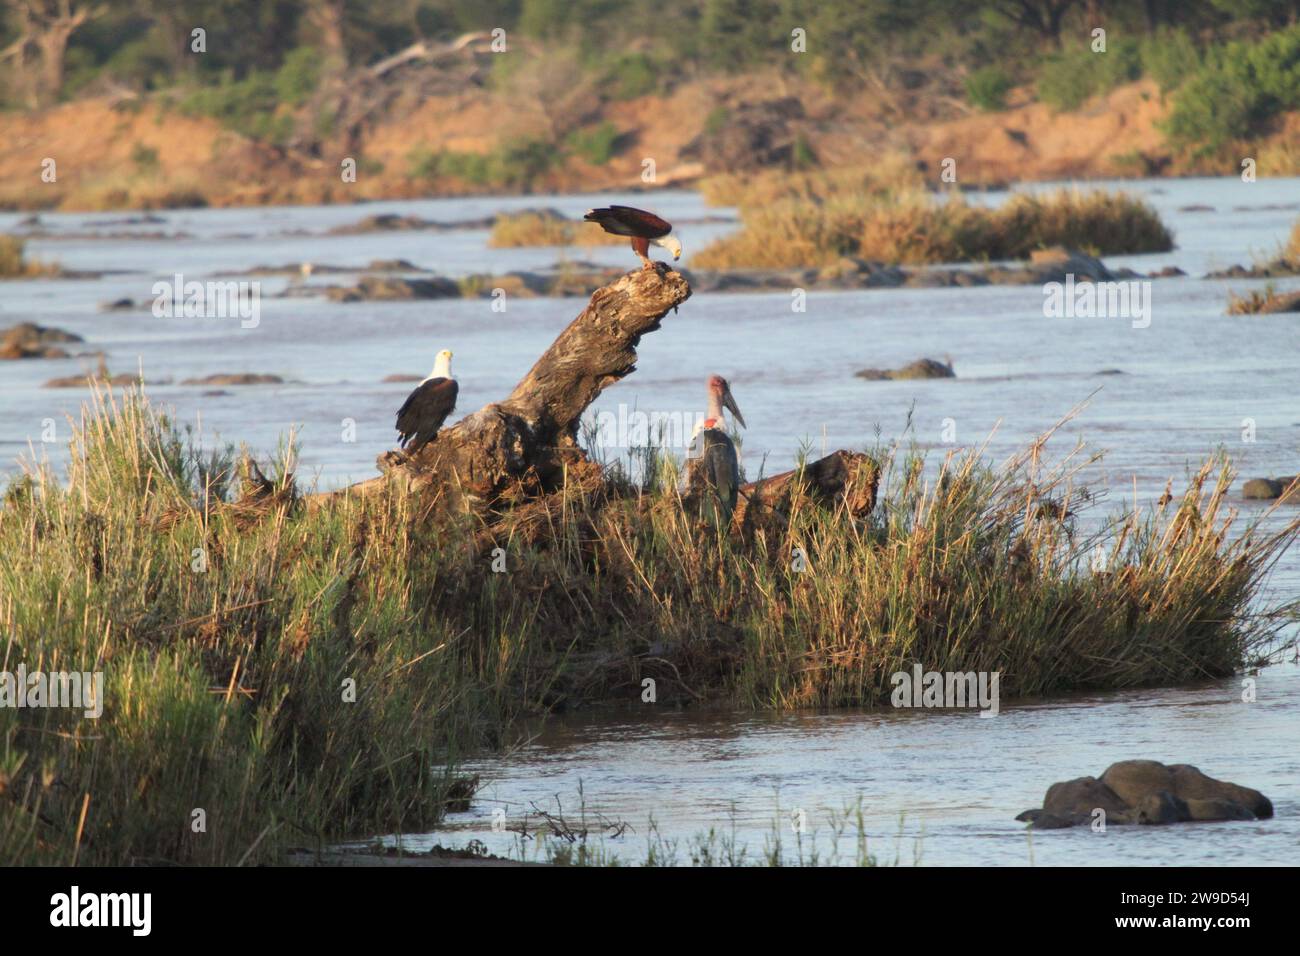 Eine Gruppe von Vögeln, die auf einem Treibholzstamm inmitten eines ruhigen Gewässers thronten. Stockfoto